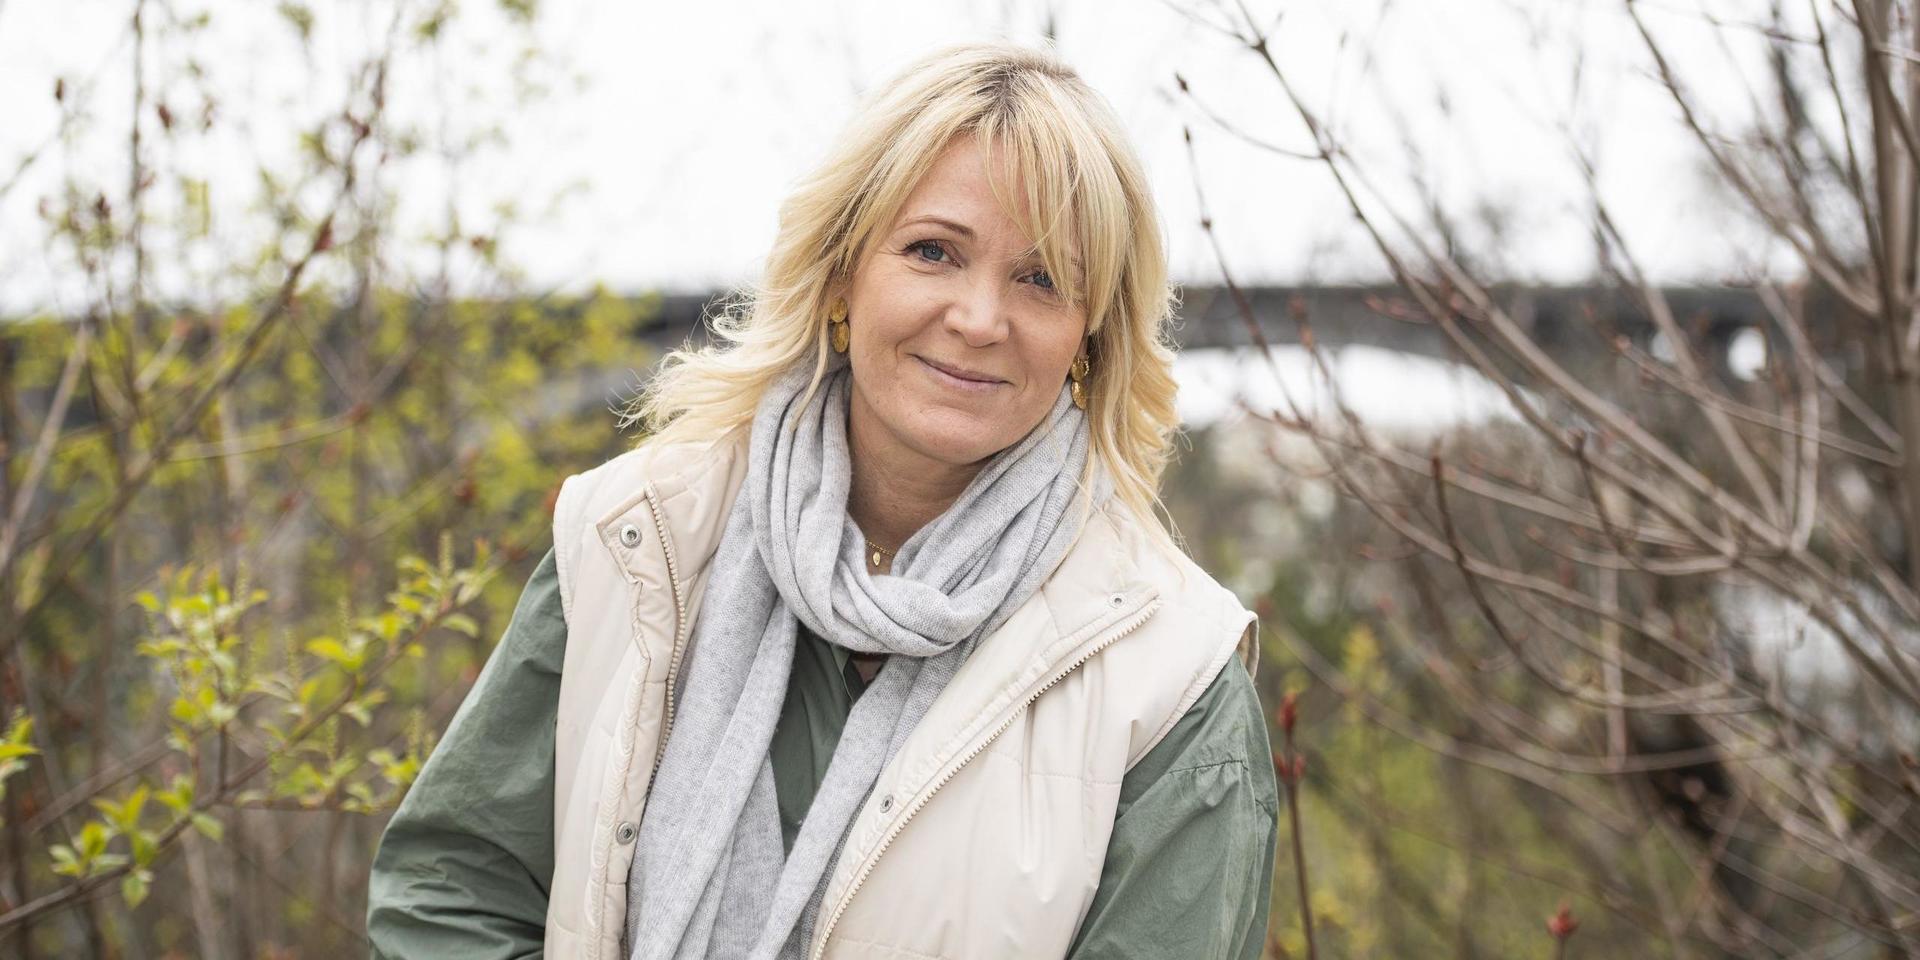 Kattis Ahlström leder tv-programmet ”Muren” i SVT, men har som vanligt mycket på gång samtidigt. Snart kommer boken ”Konsten att mötas”, som hon är medförfattare till.